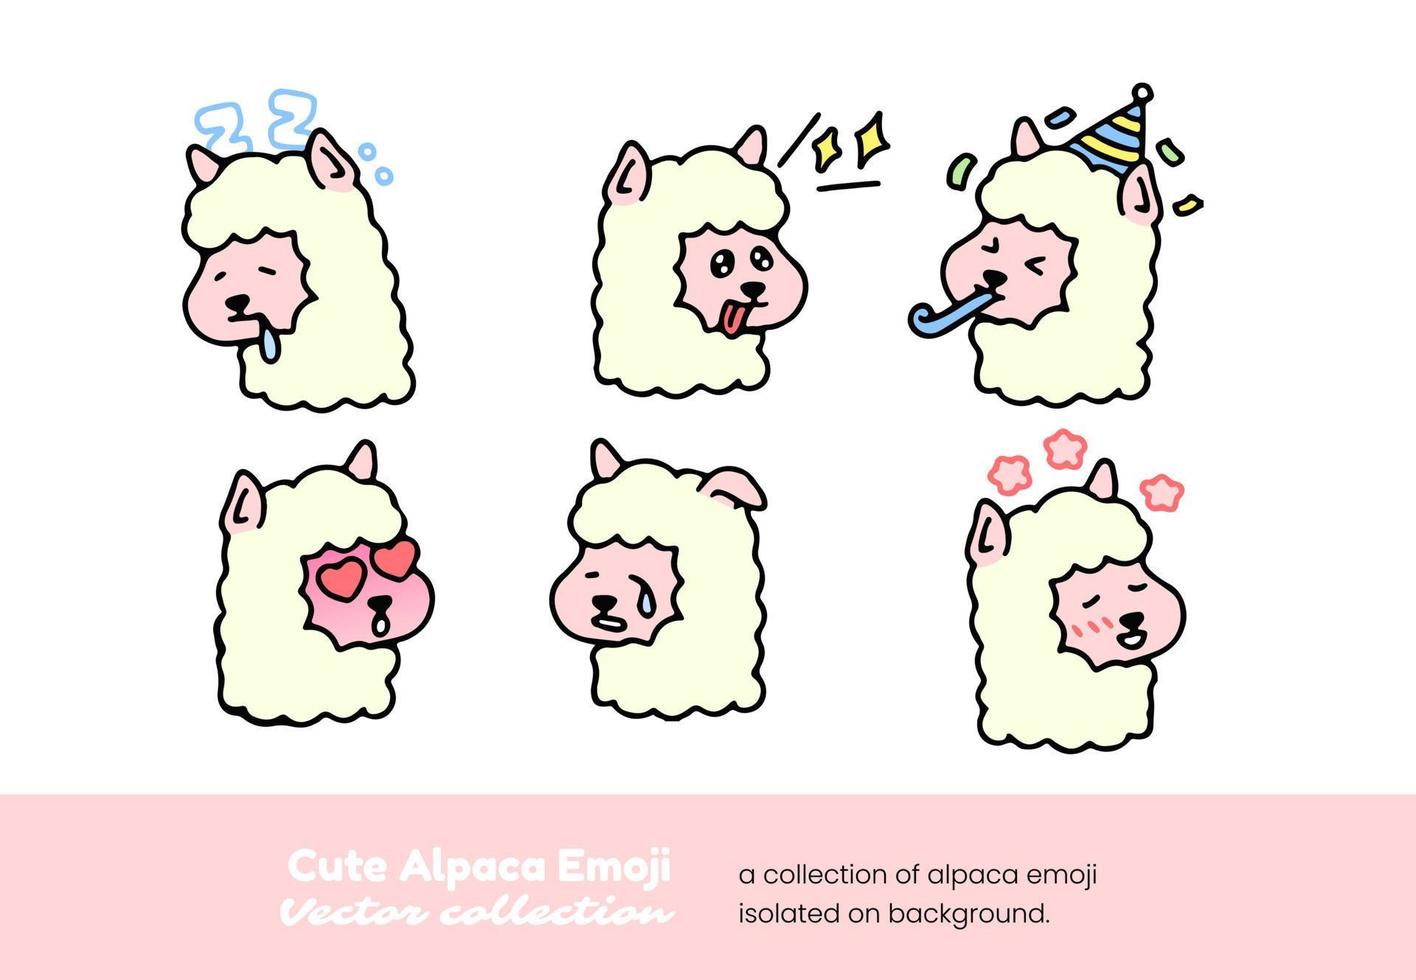 en uppsättning av söt alpacka emojis som visar sova, vädjande, festa, och gråt, isolerat på en bakgrund vektor illustration.